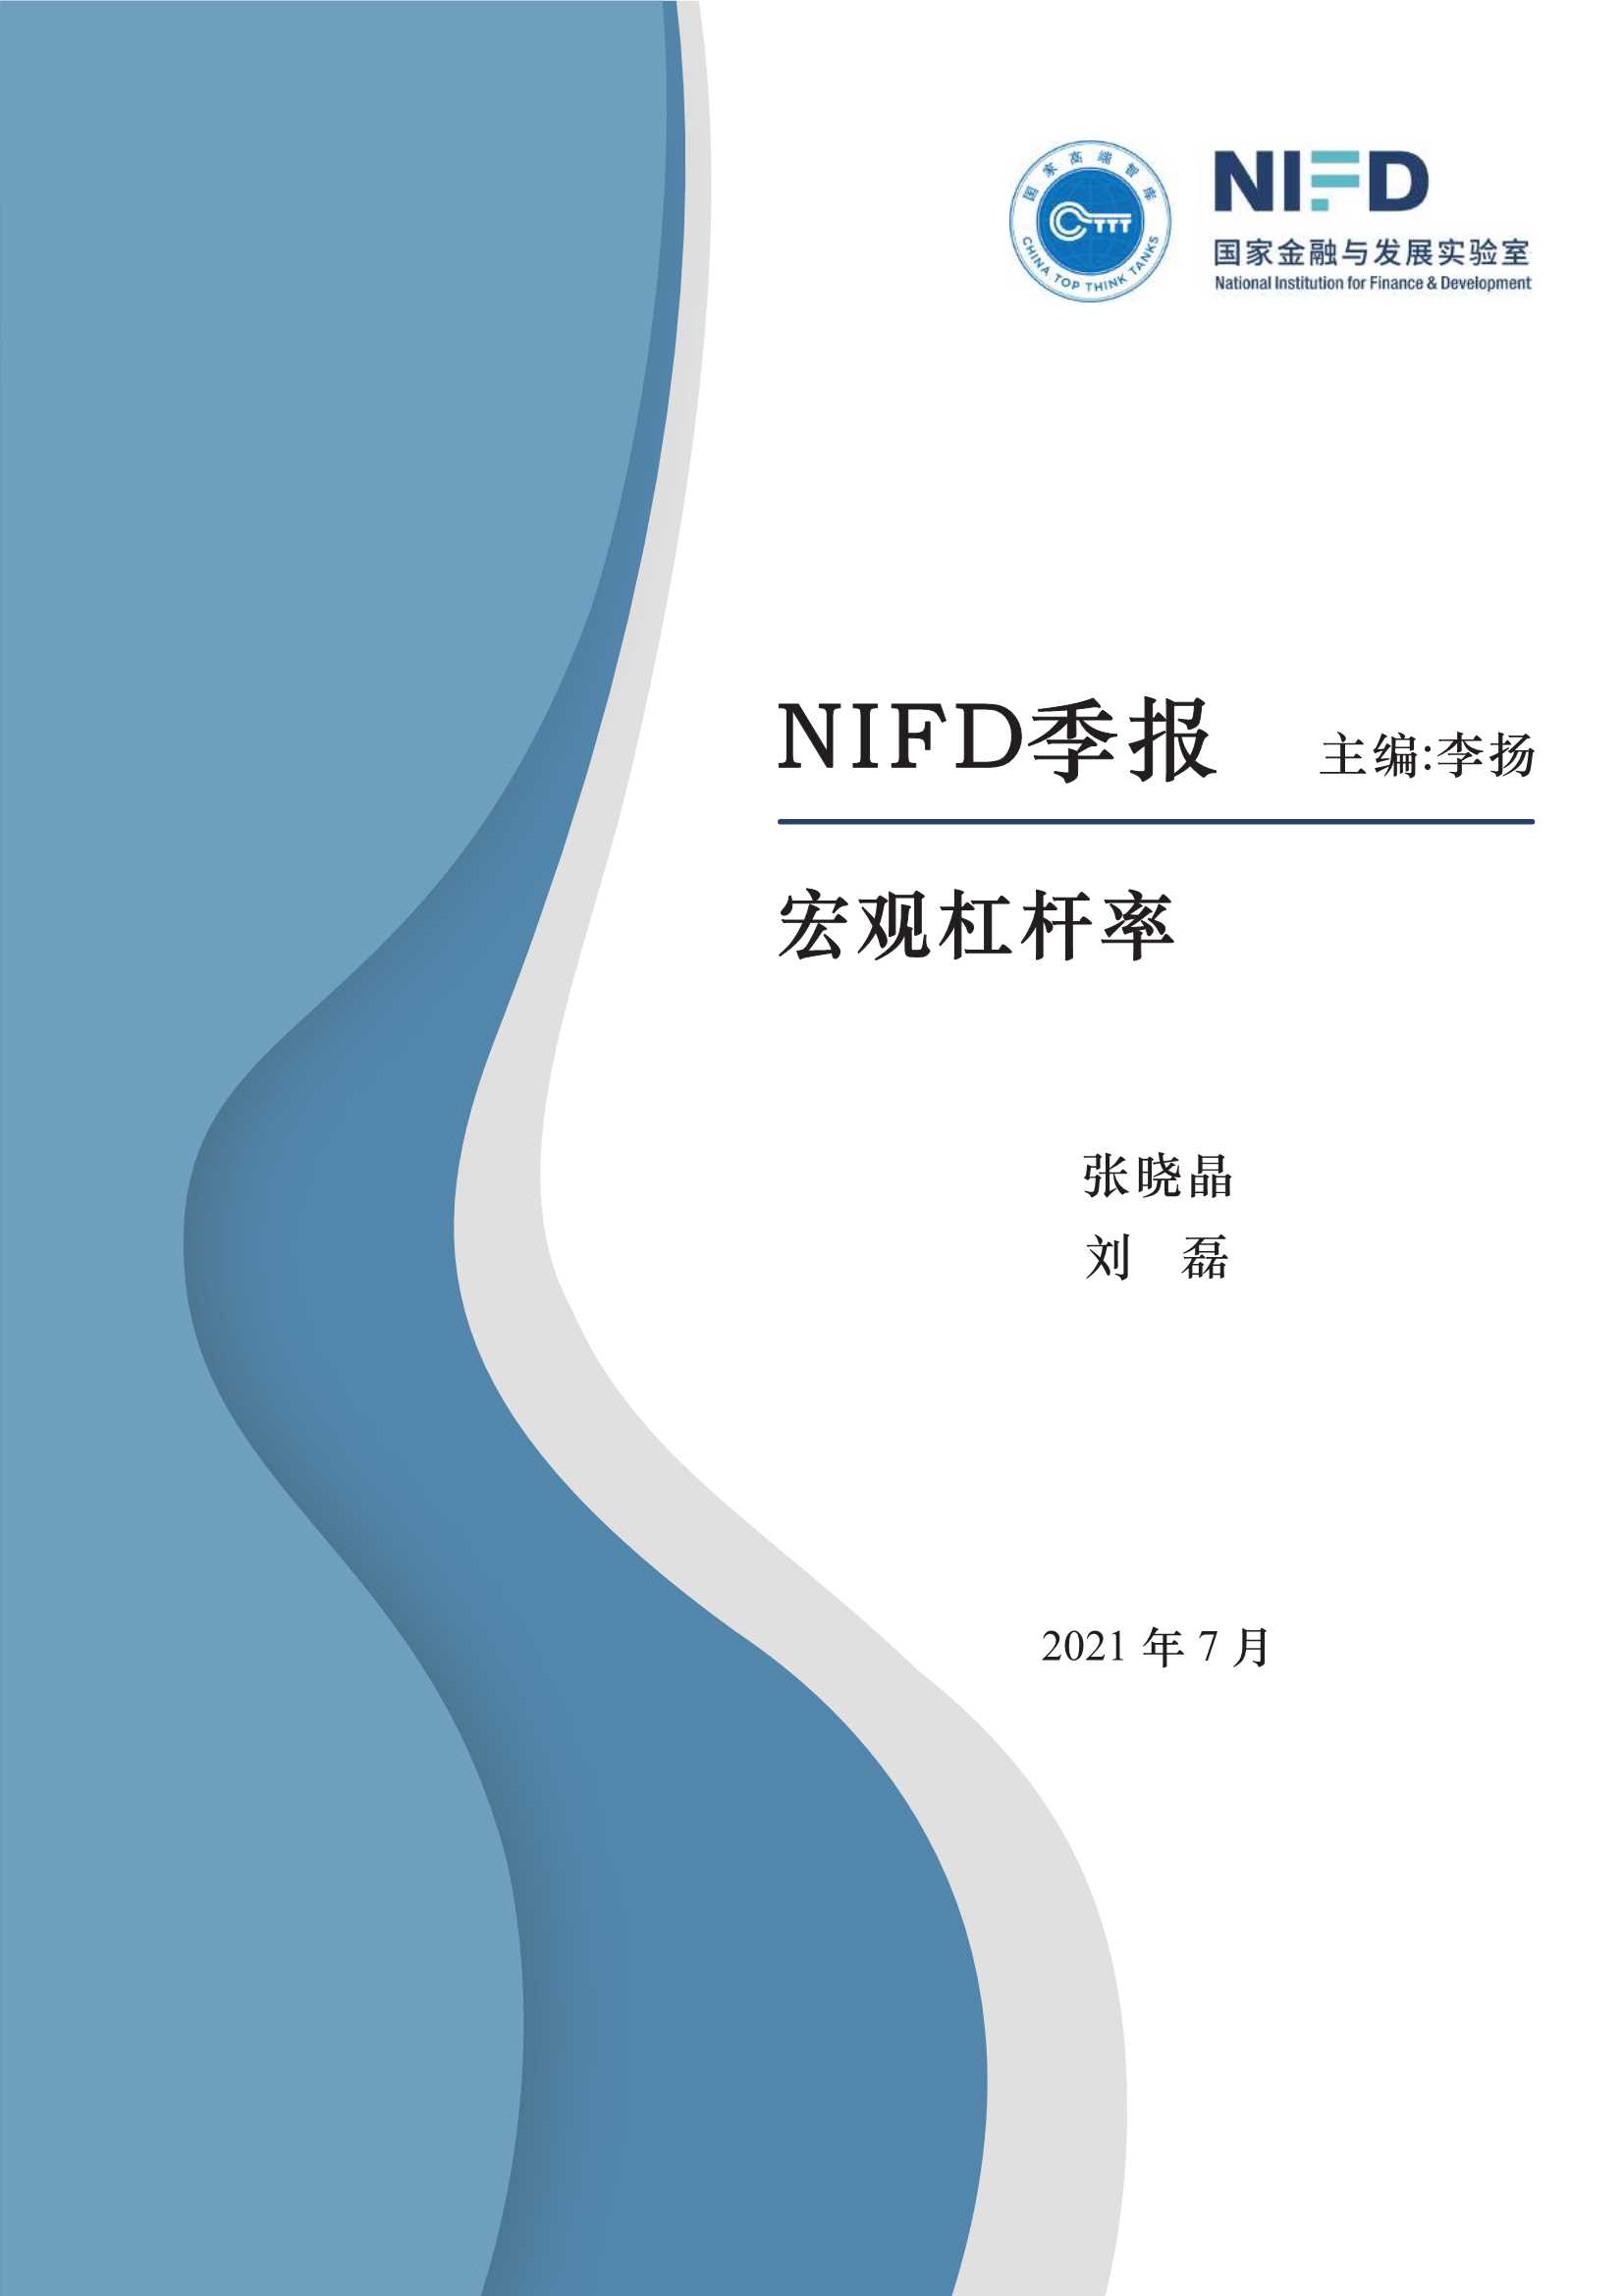 NIFD-2021Q2宏观杠杆率-2021.07-20页